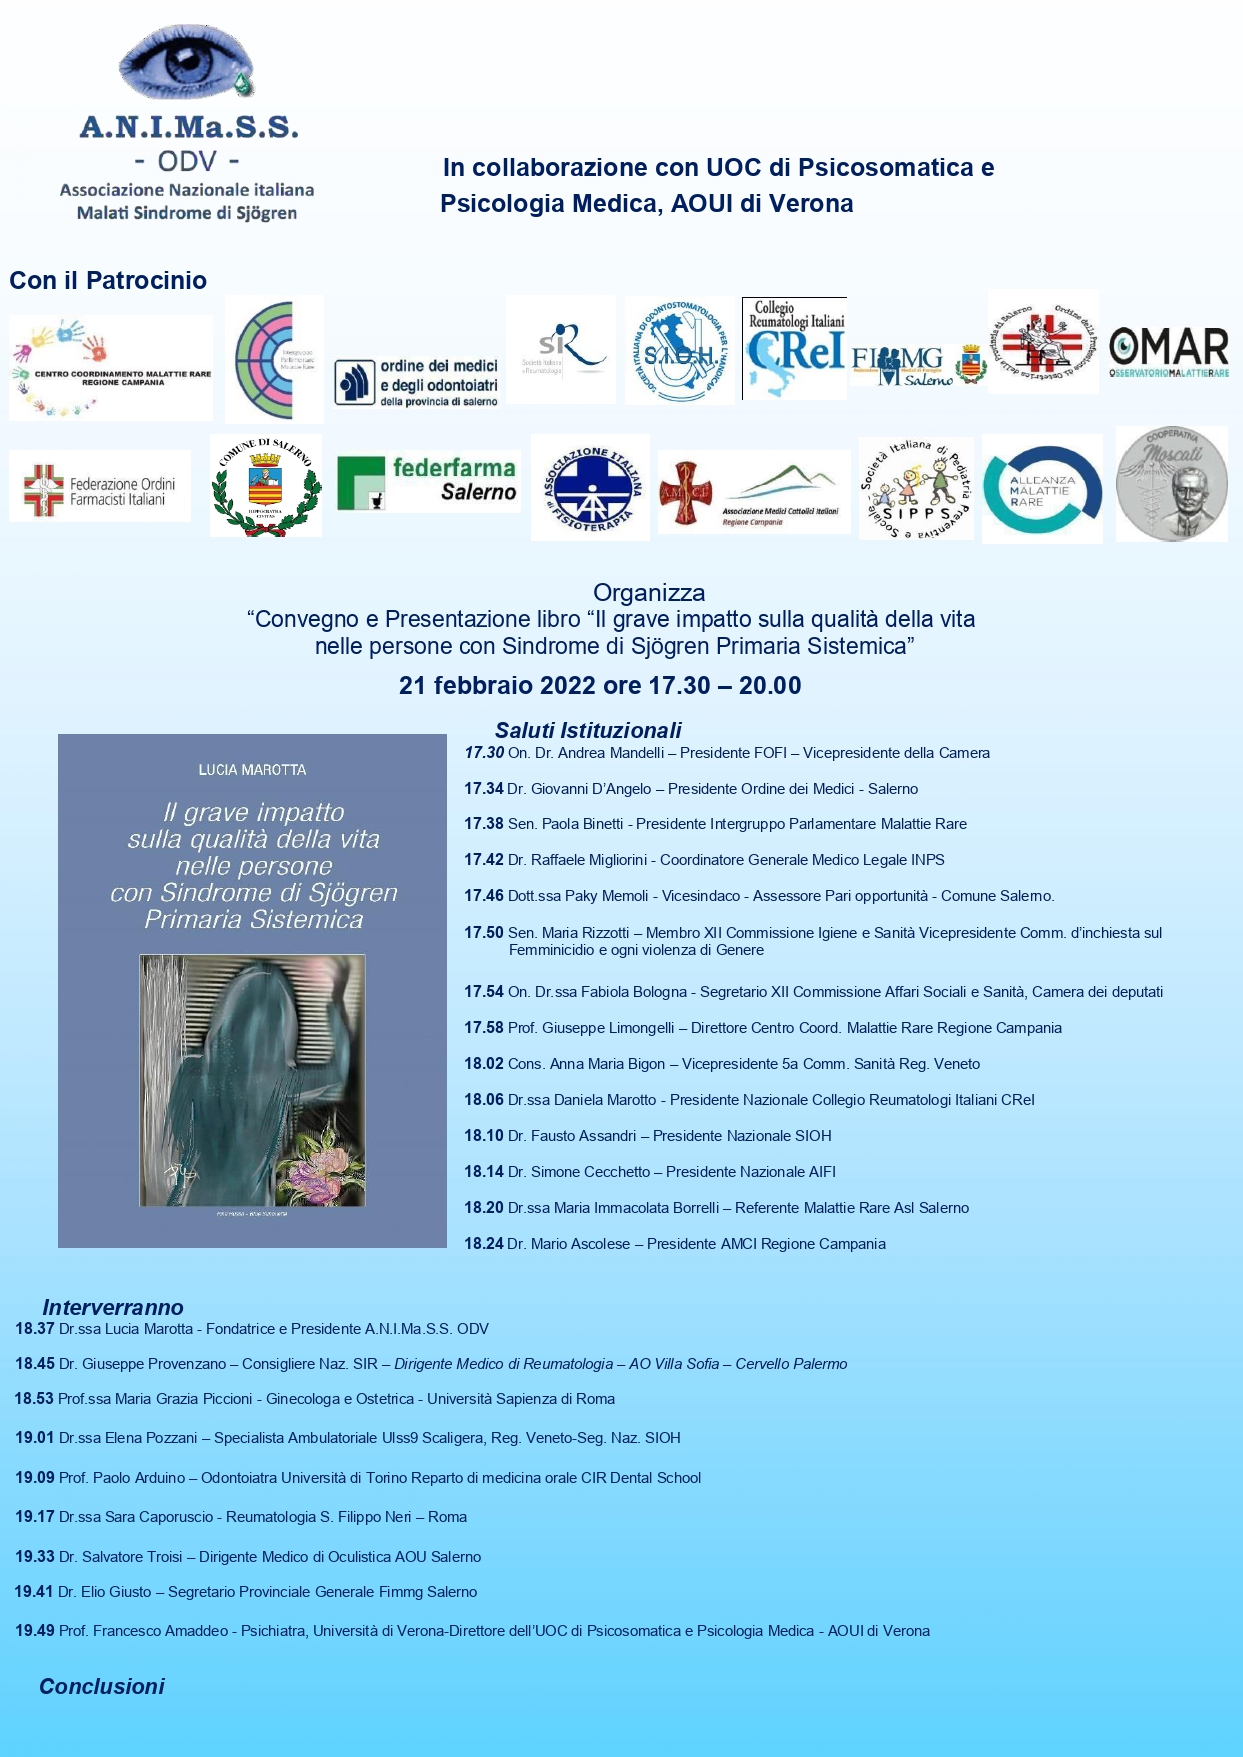 A.N.I.Ma.S.S. ODV: Settimana di Celebrazione Giornata Mondiale Malattie Rare Sindrome di Sjögren Primaria Sistemica